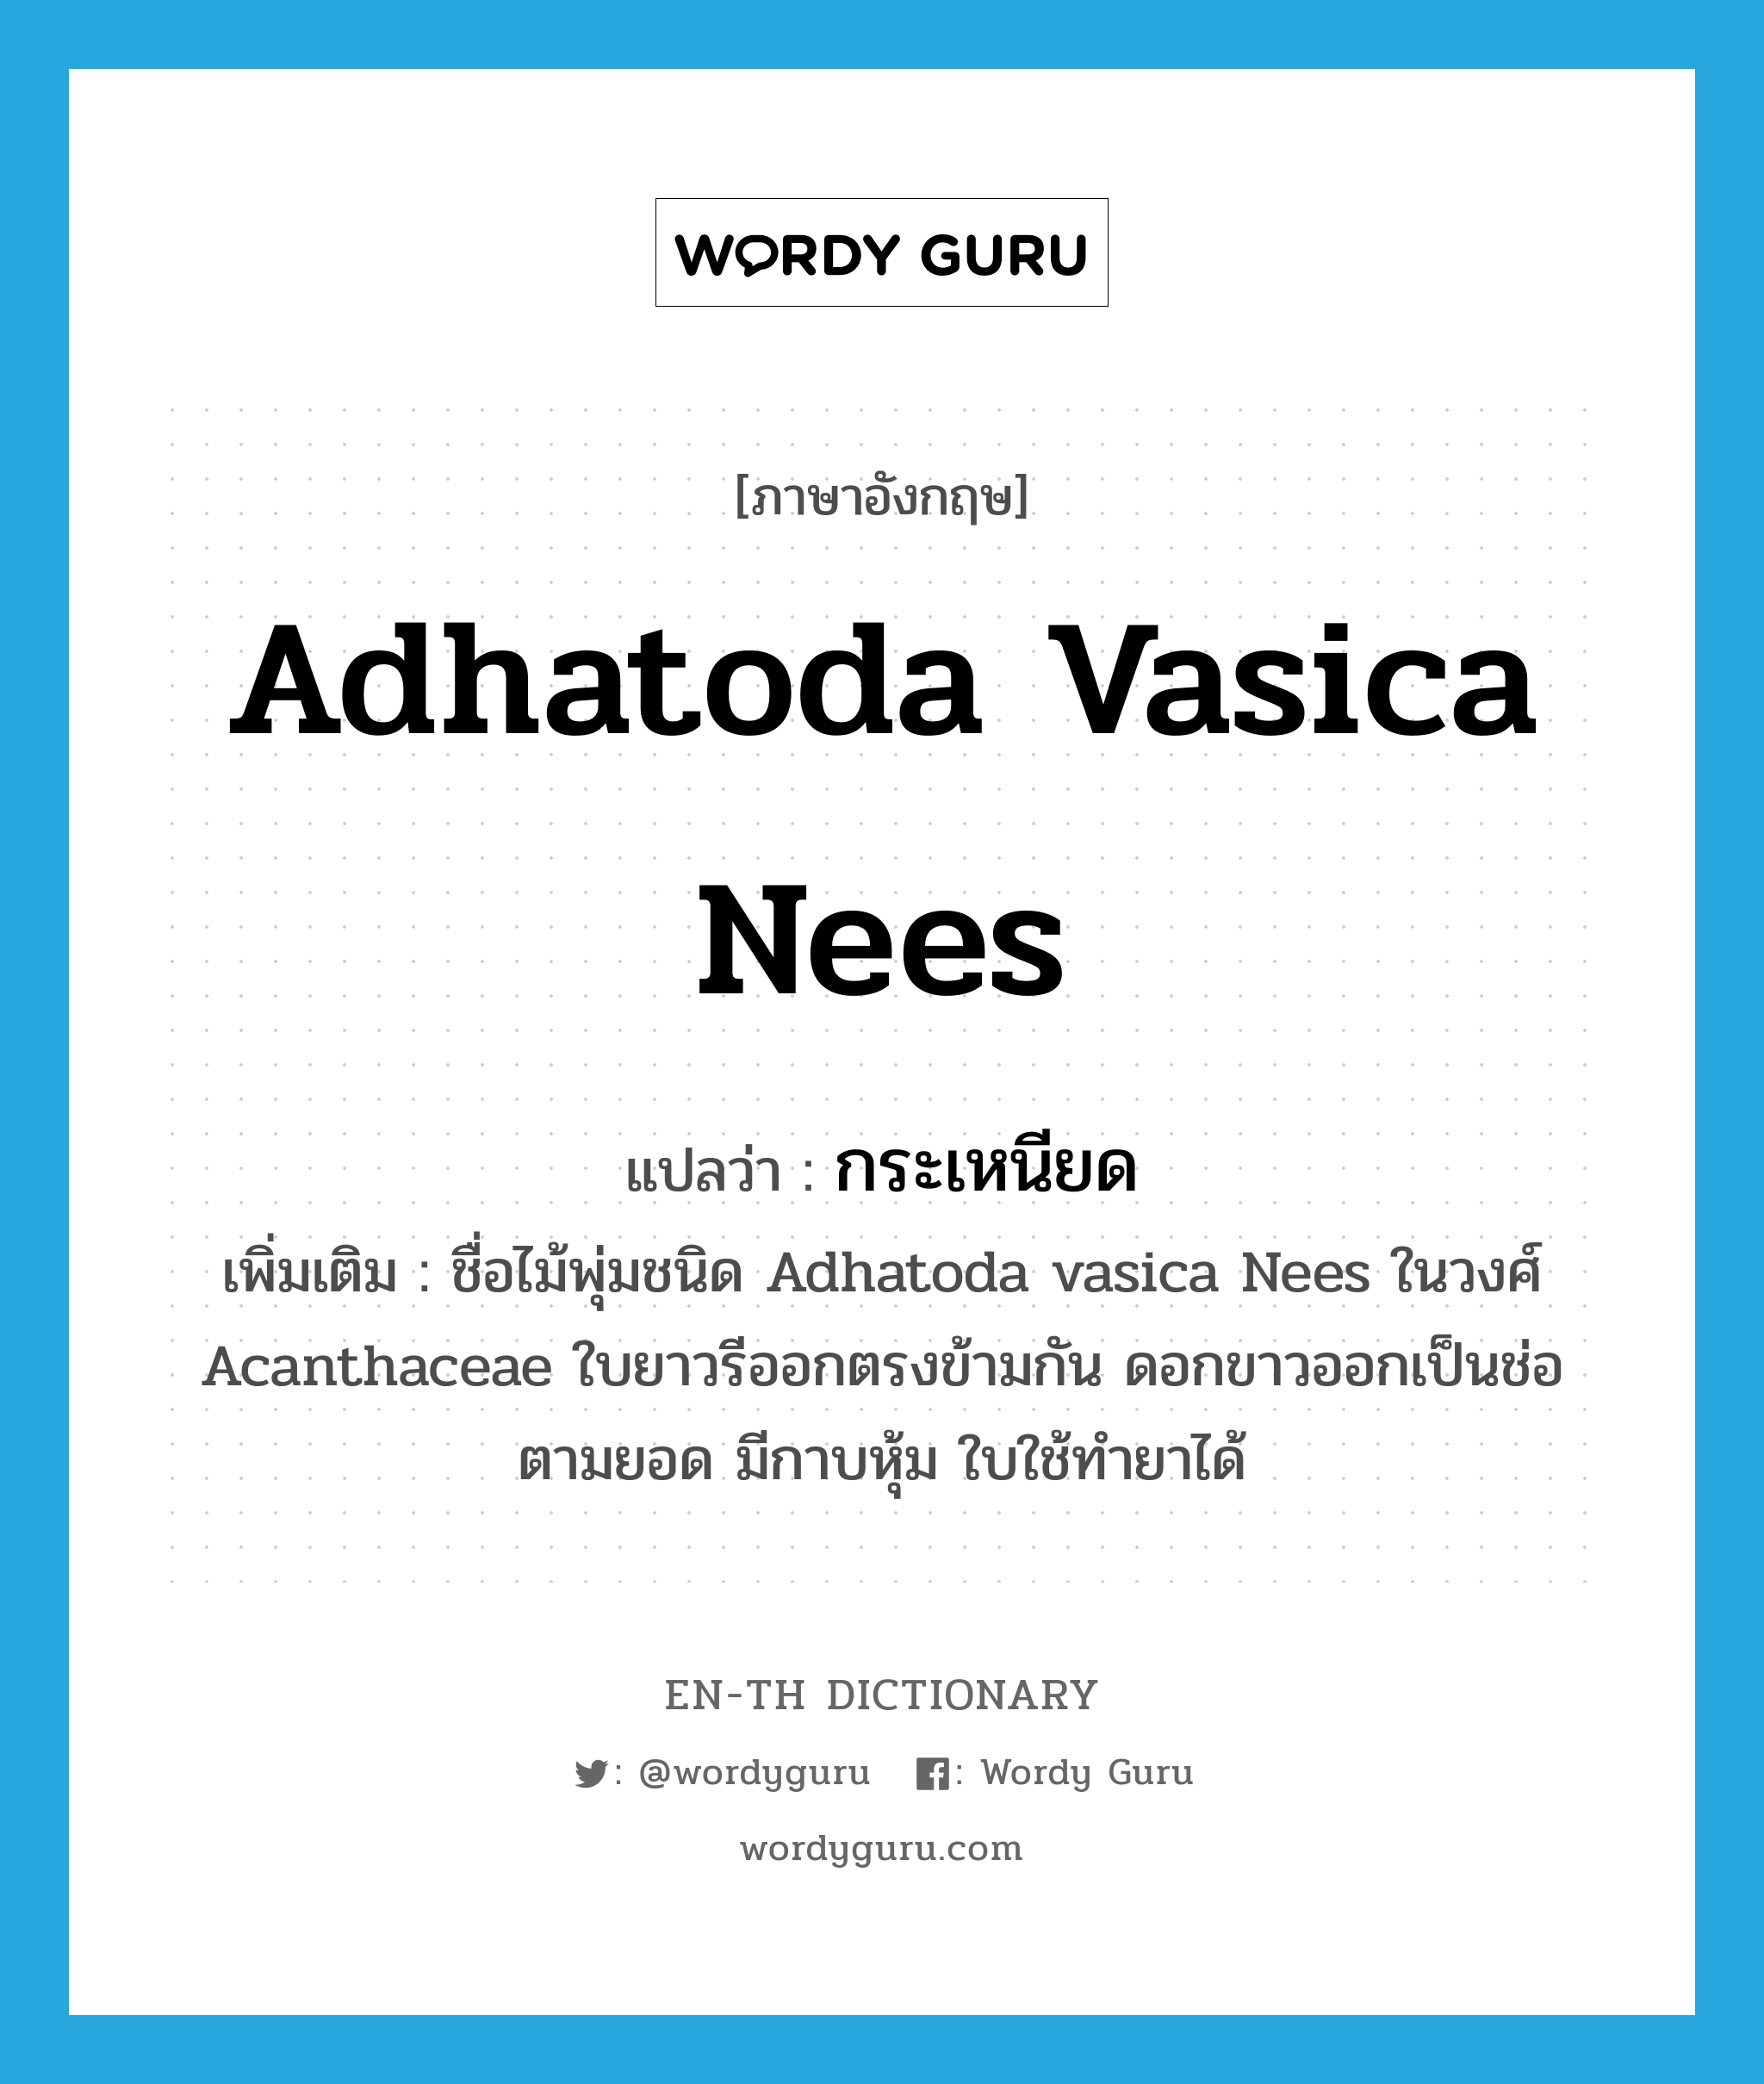 Adhatoda vasica Nees แปลว่า?, คำศัพท์ภาษาอังกฤษ Adhatoda vasica Nees แปลว่า กระเหนียด ประเภท N เพิ่มเติม ชื่อไม้พุ่มชนิด Adhatoda vasica Nees ในวงศ์ Acanthaceae ใบยาวรีออกตรงข้ามกัน ดอกขาวออกเป็นช่อตามยอด มีกาบหุ้ม ใบใช้ทำยาได้ หมวด N